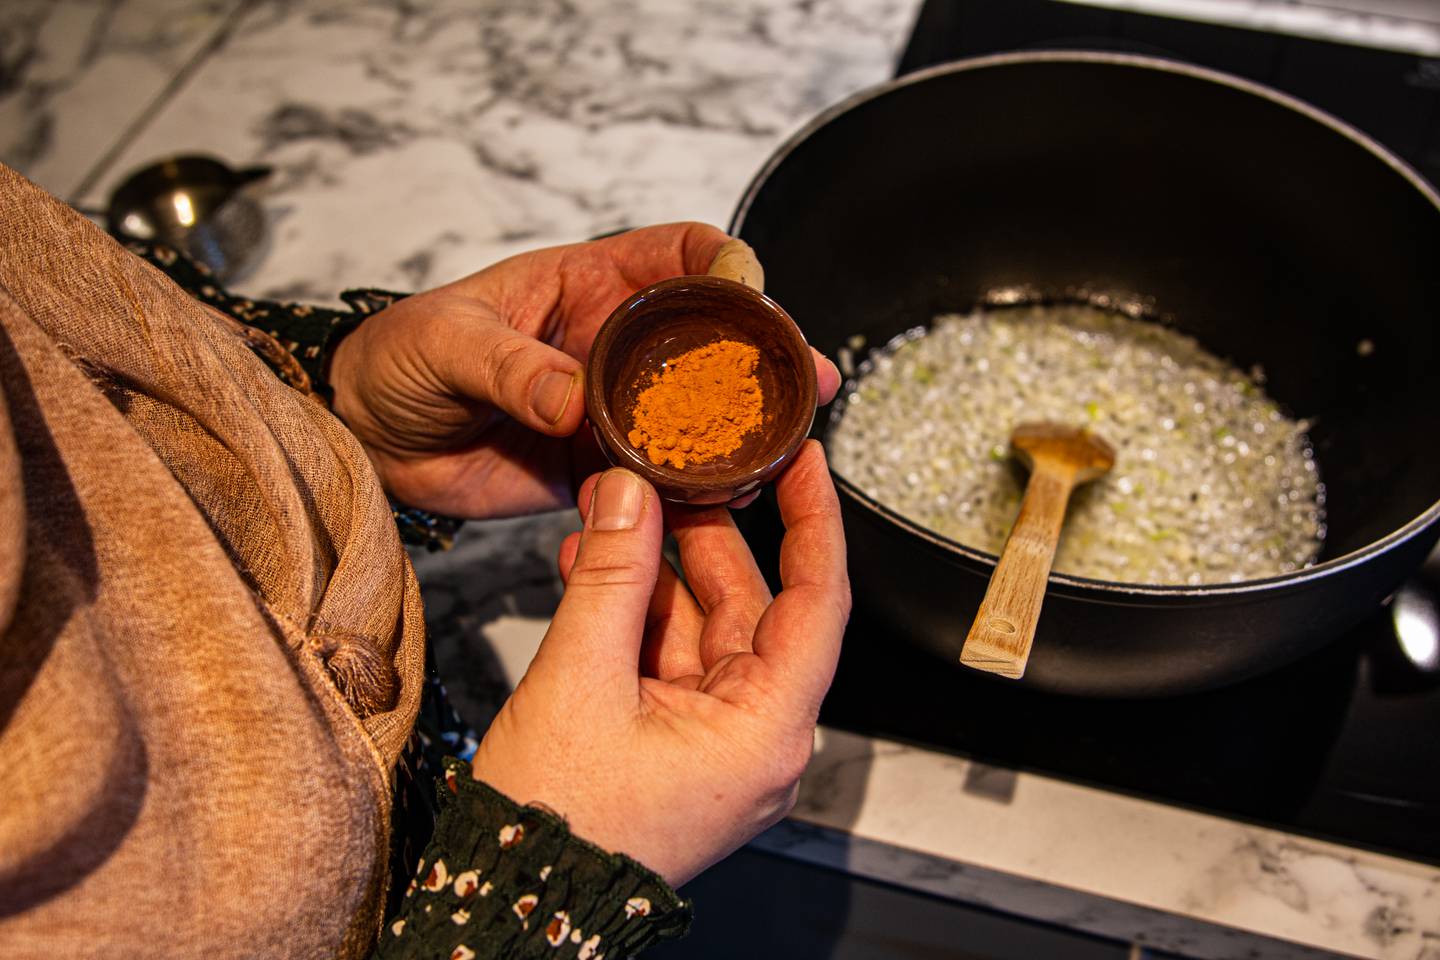 Golalah viser fram krydderet gurkemeie, som hun har i en liten brun skål.